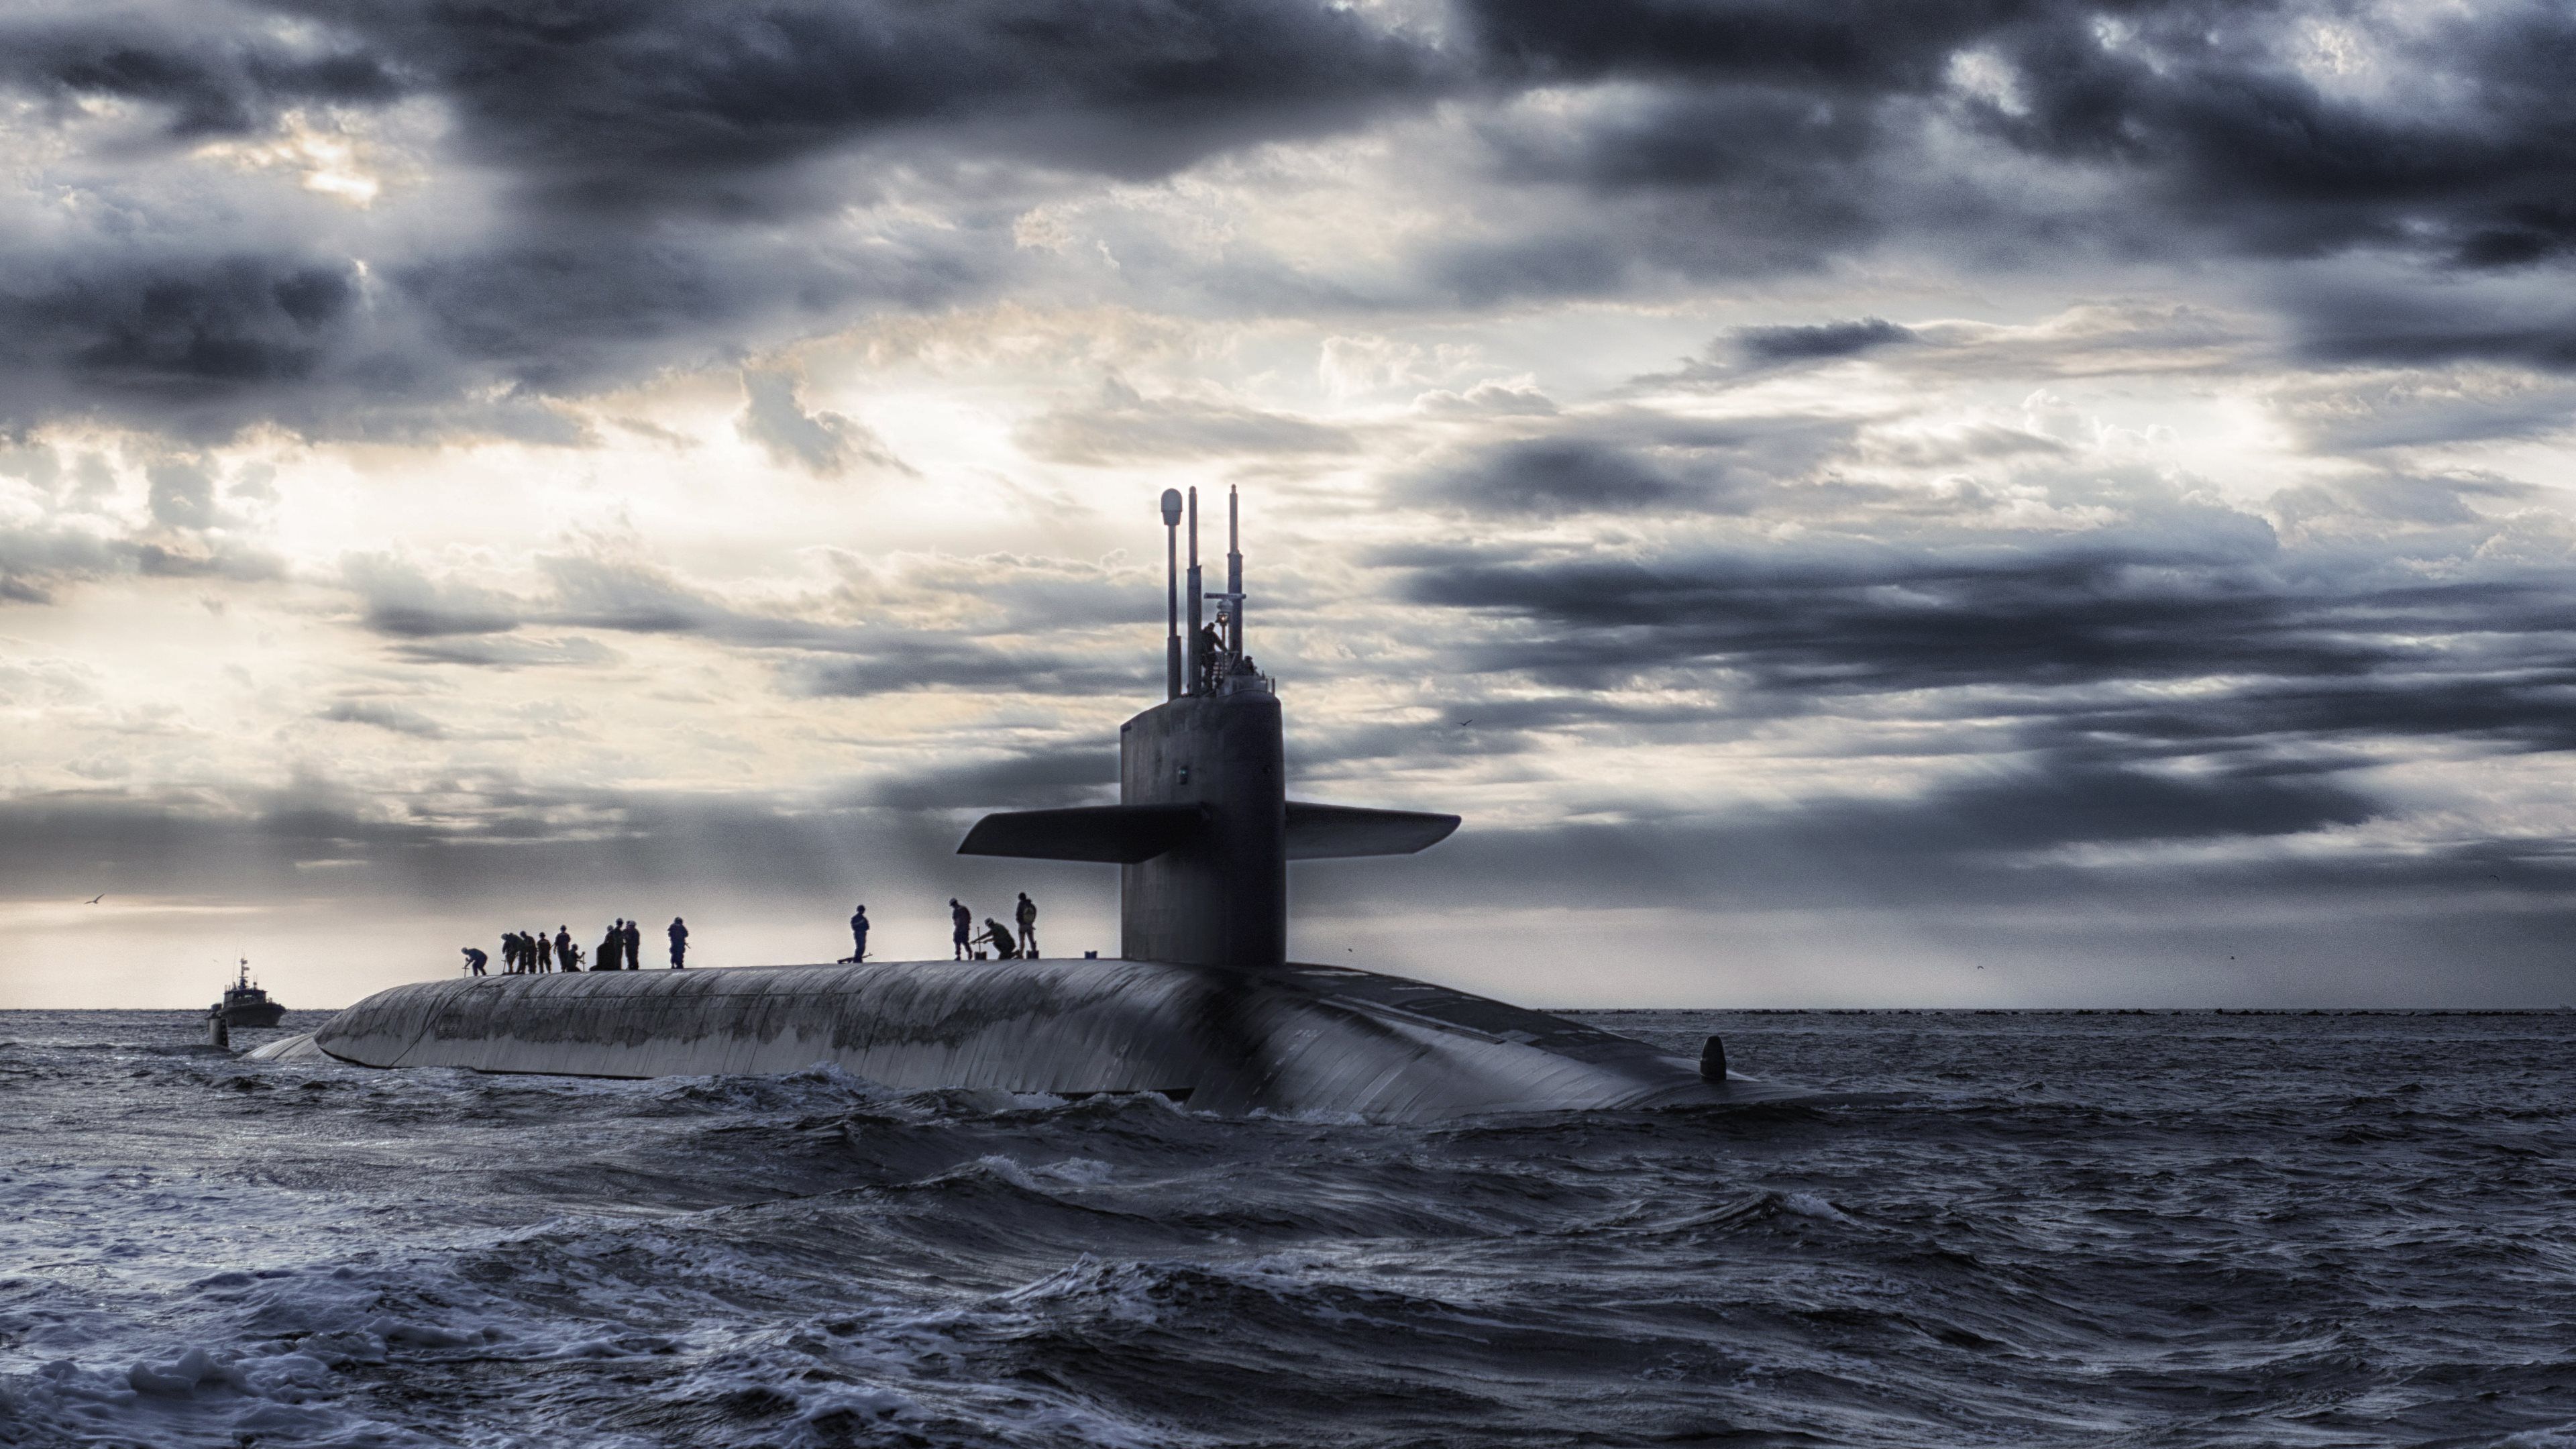  تصویر جذاب و خاص از زیردریایی شگفت انگیز 